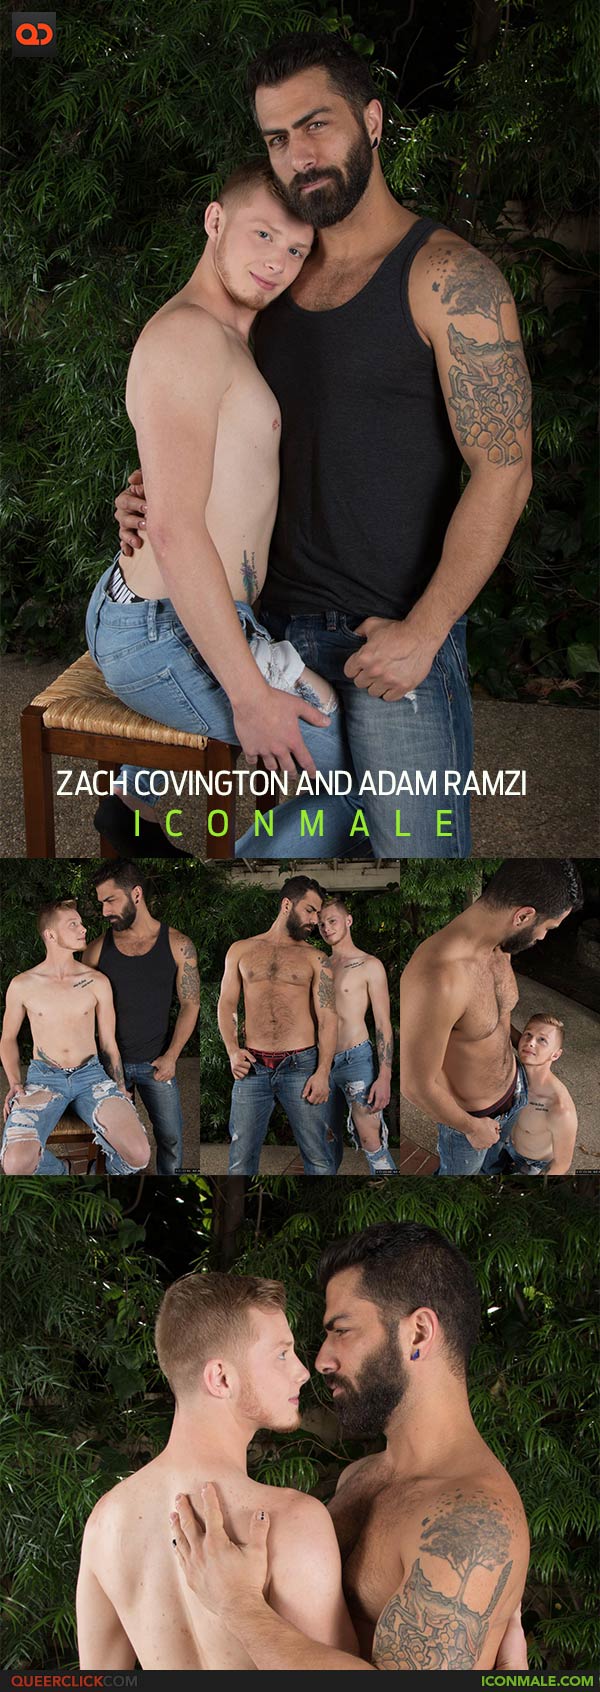 IconMale: Zach Covington and Adam Ramzi